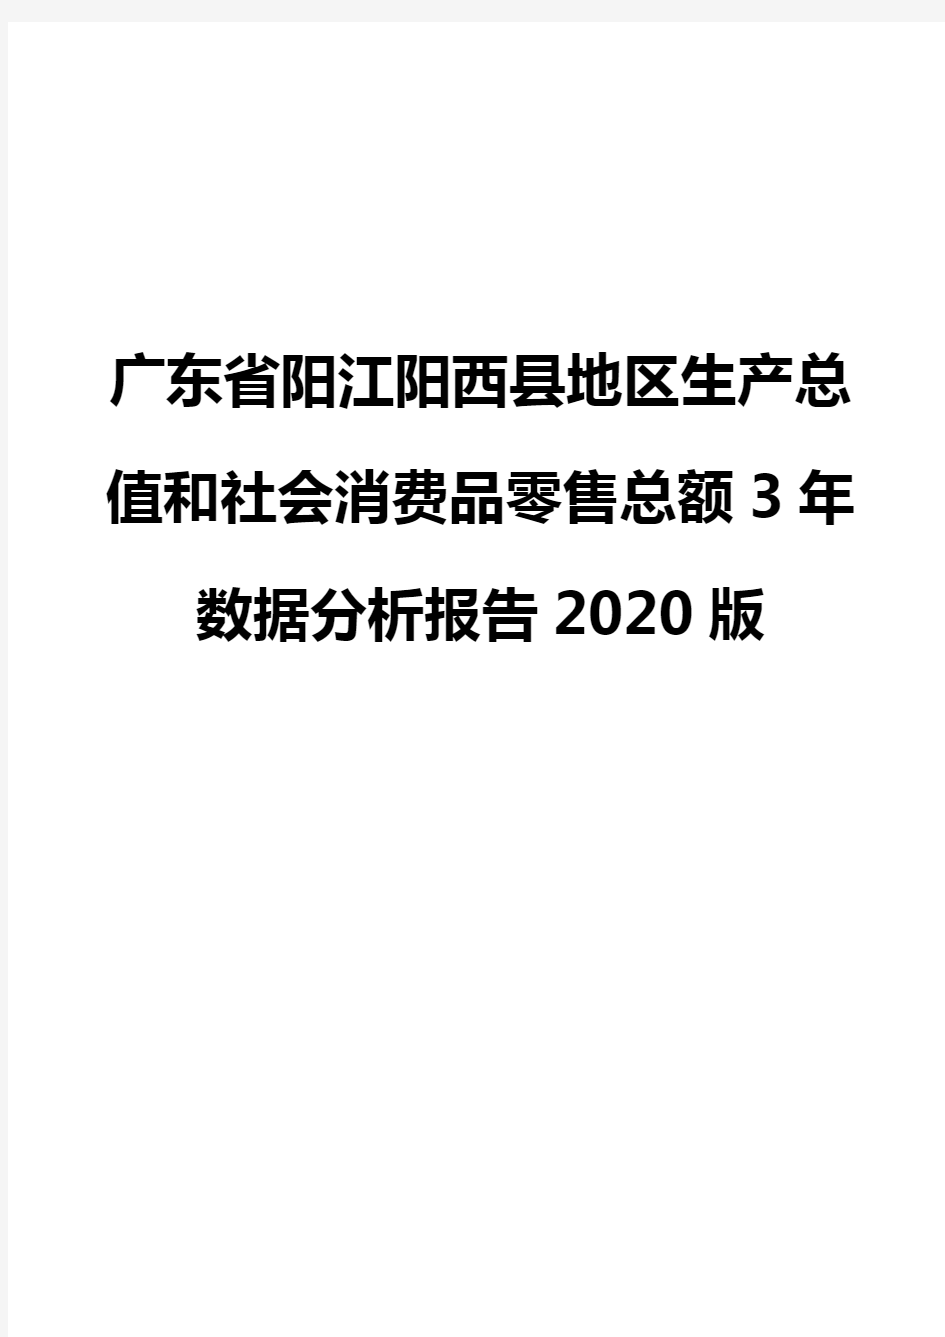 广东省阳江阳西县地区生产总值和社会消费品零售总额3年数据分析报告2020版